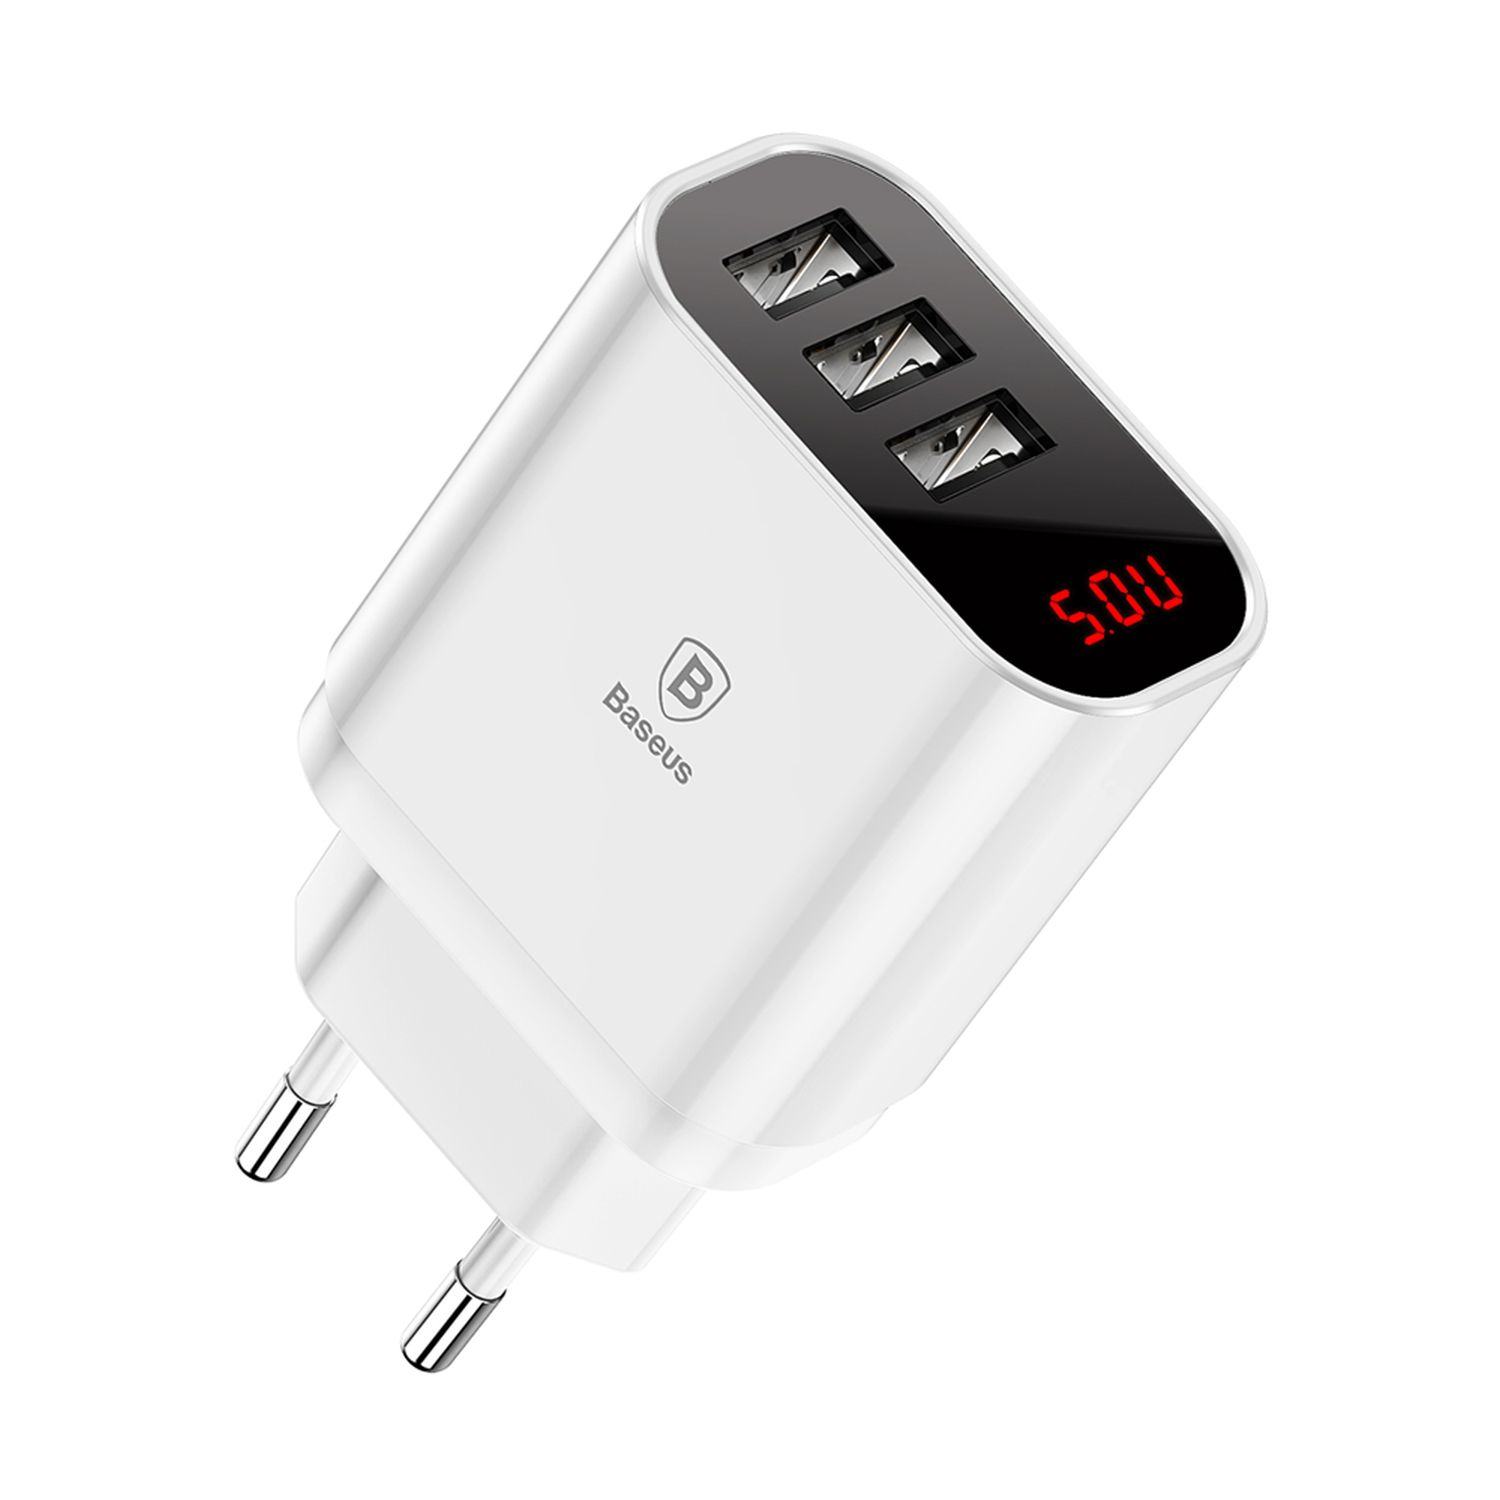 BASEUS LED Anzeige Ladegerät 3-Fach 3.4A Voltmeter USB Universal, Weiß Netzteil